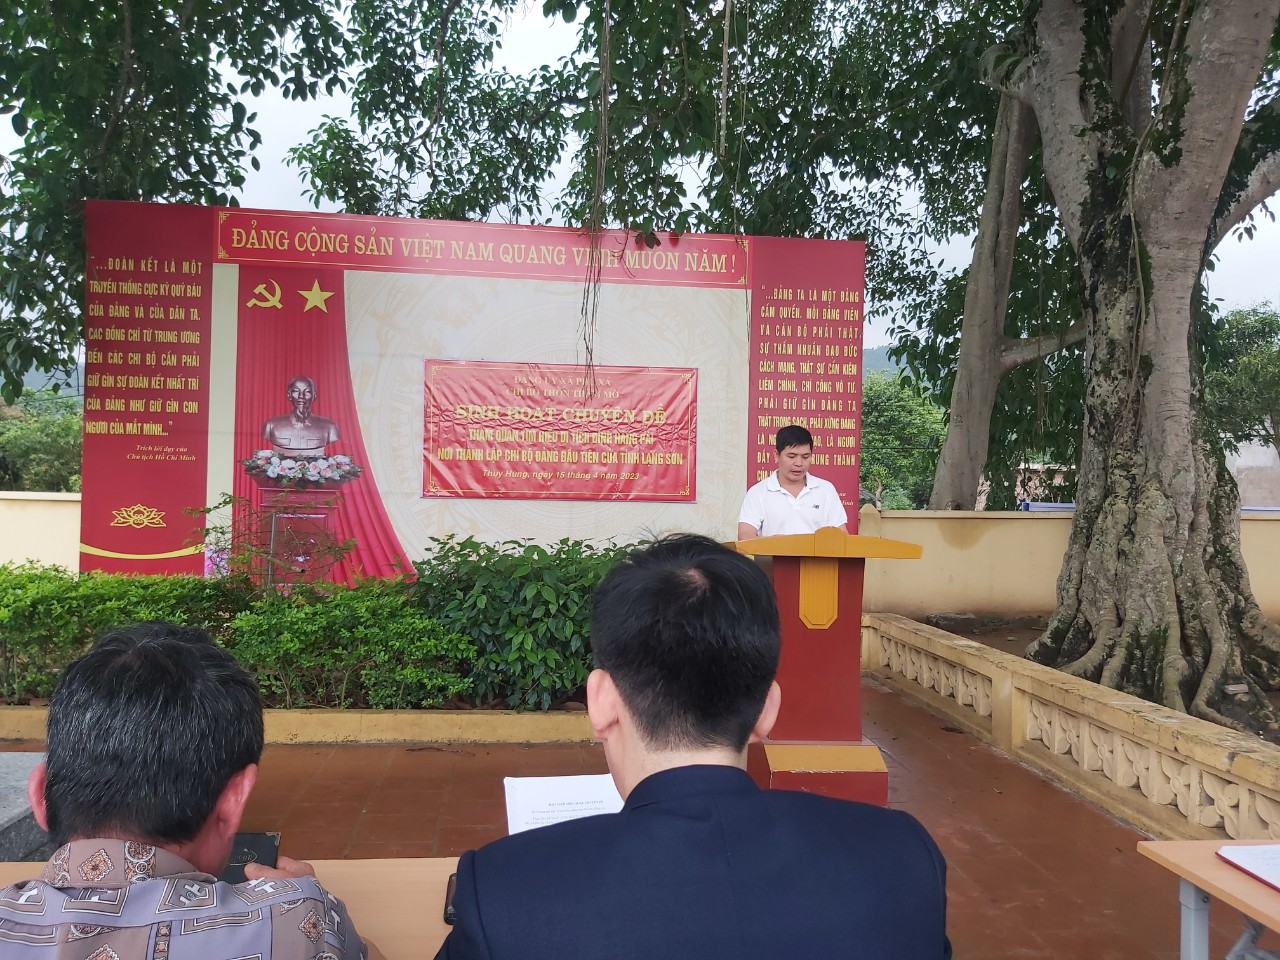 Đồng chí Lăng Văn Trung, Bí thư chi bộ kiêm trưởng thôn triển khai nội dung buổi sinh hoạt chuyên đề